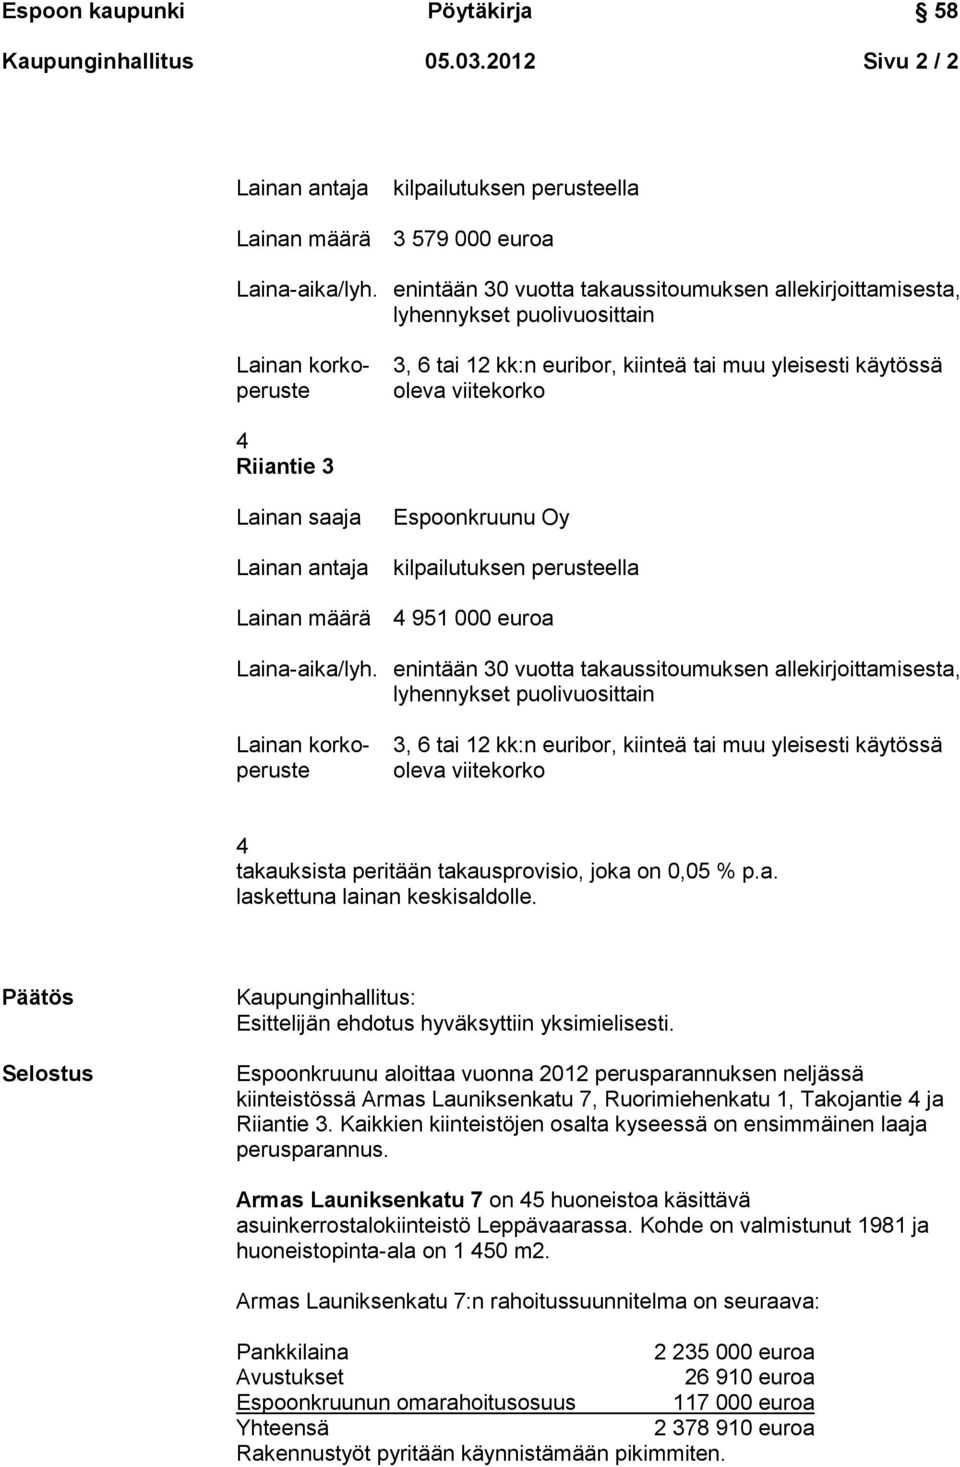 Espoonkruunu aloittaa vuonna 2012 perusparannuksen neljässä kiinteistössä Armas Launiksenkatu 7, Ruorimiehenkatu 1, Takojantie 4 ja Riiantie 3.